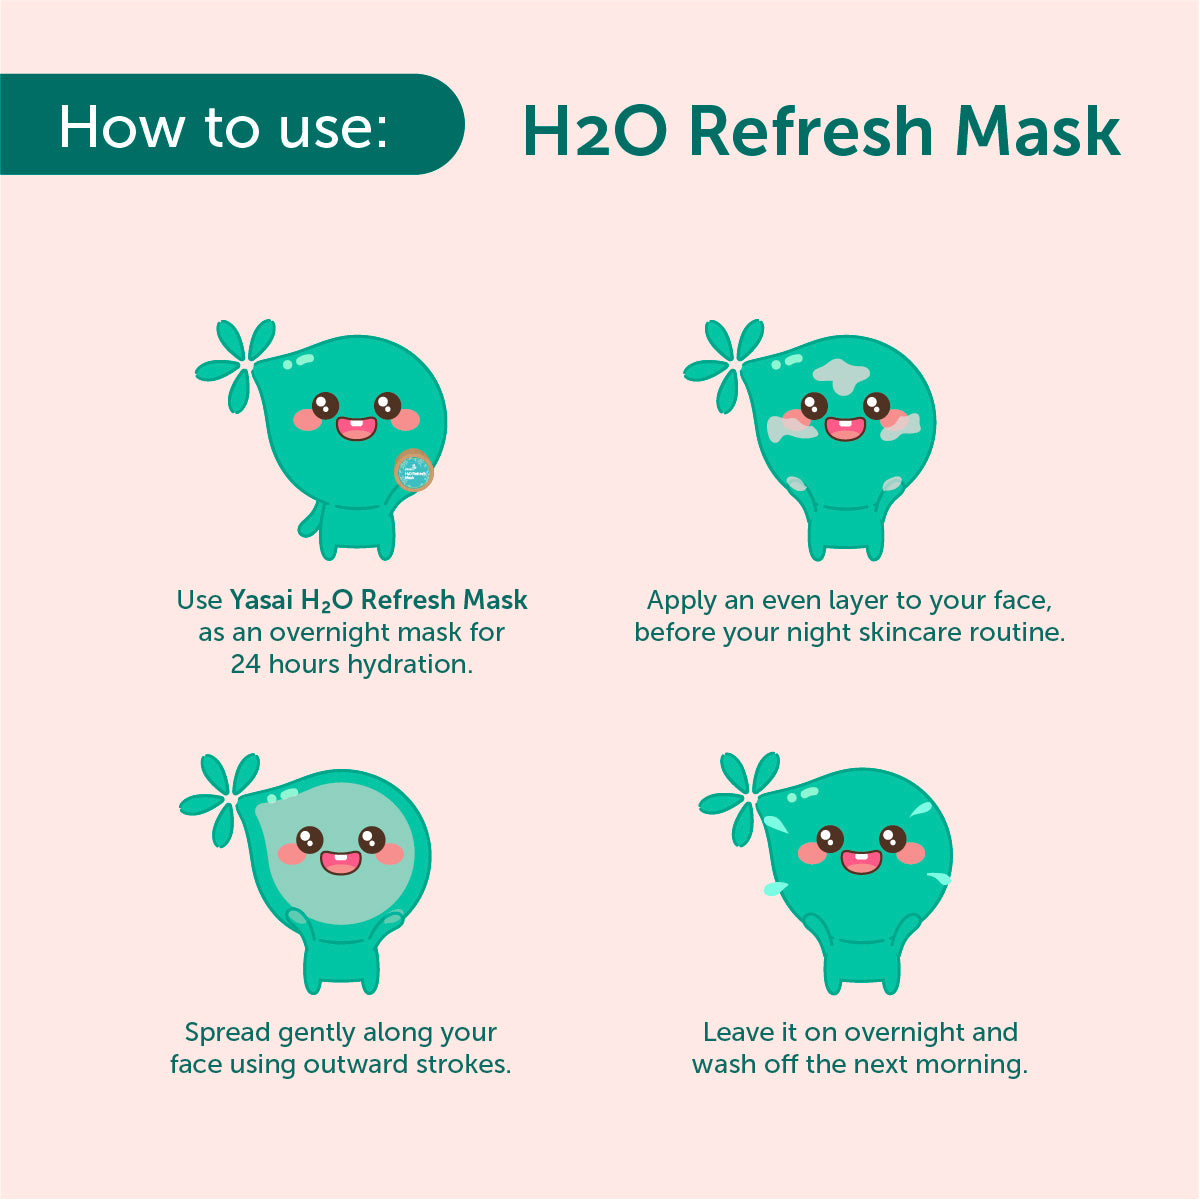 Yasai H2O Refresh Mask